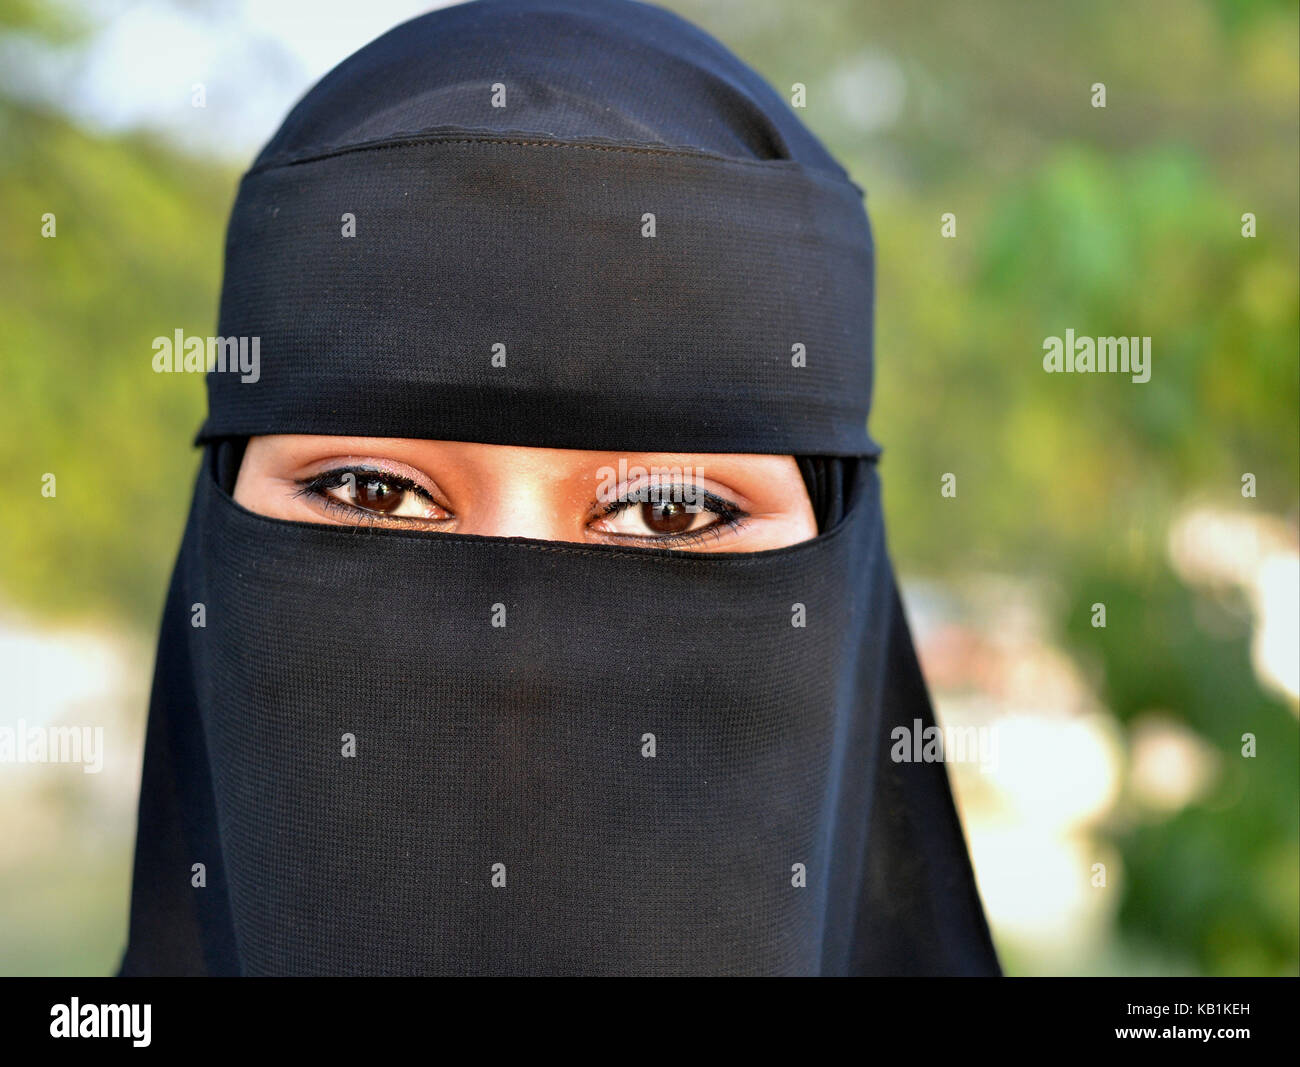 Honeymooning giovani sudanesi donna vestita di nero e niqab burqa nero con solo una piccola apertura per il suo bellissimo, occhi a mandorla Foto Stock